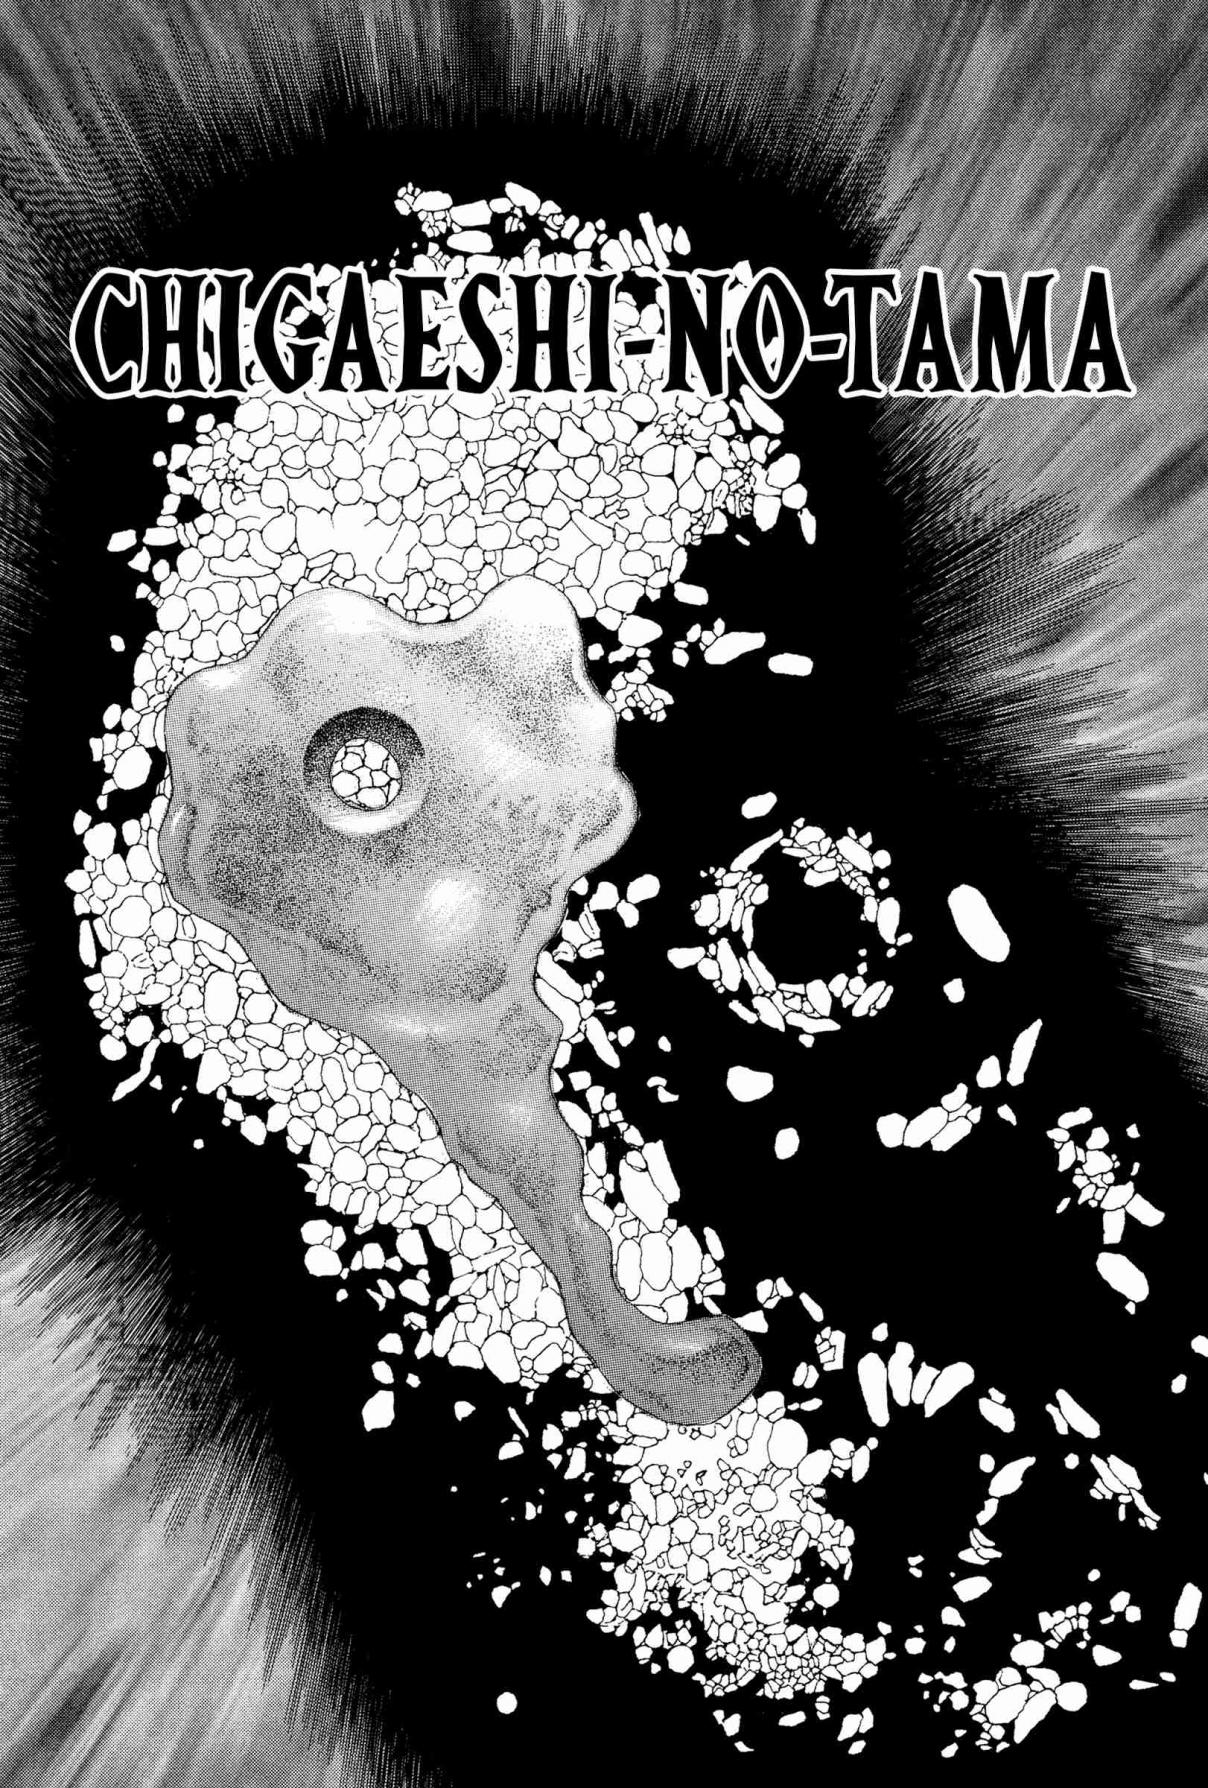 Chibiki no Iwa Vol. 1 Ch. 4 Chigaeshi no Tama